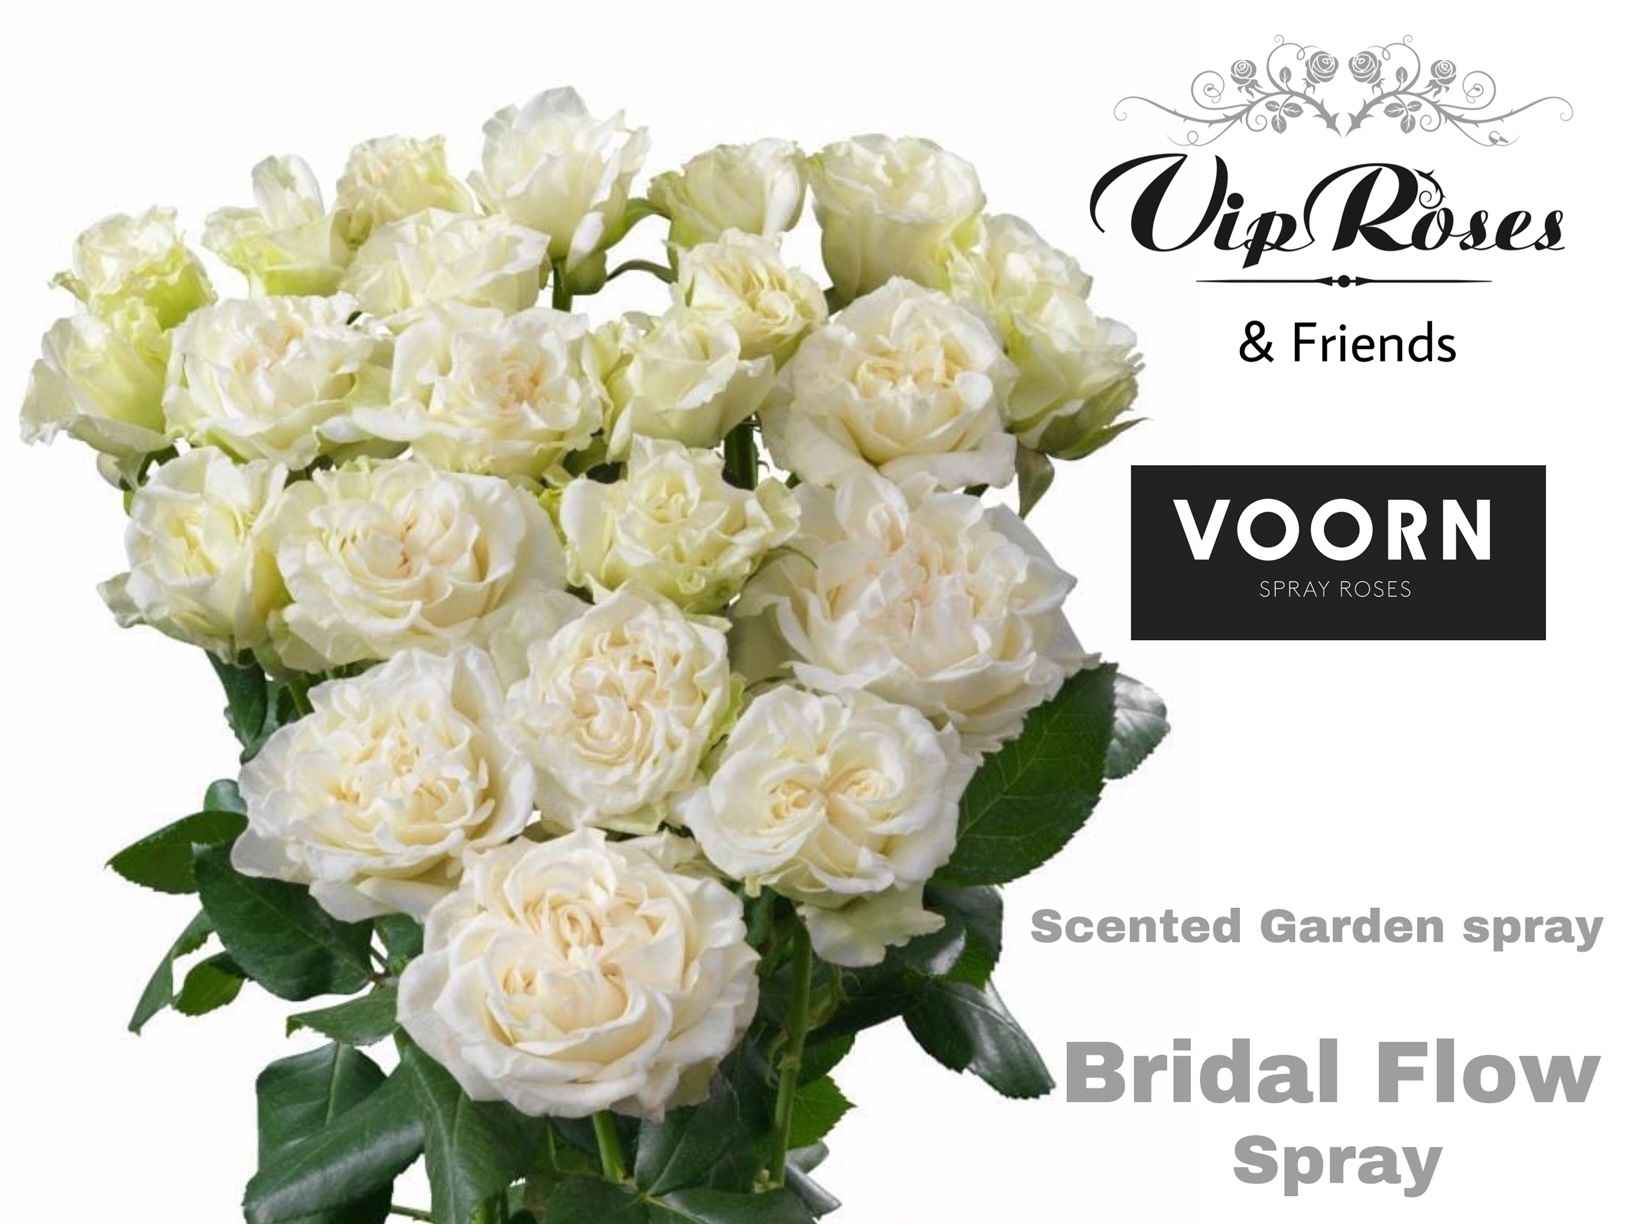 Срезанные цветы оптом Rosa sp bridal flow от 15шт из Голландии с доставкой по России